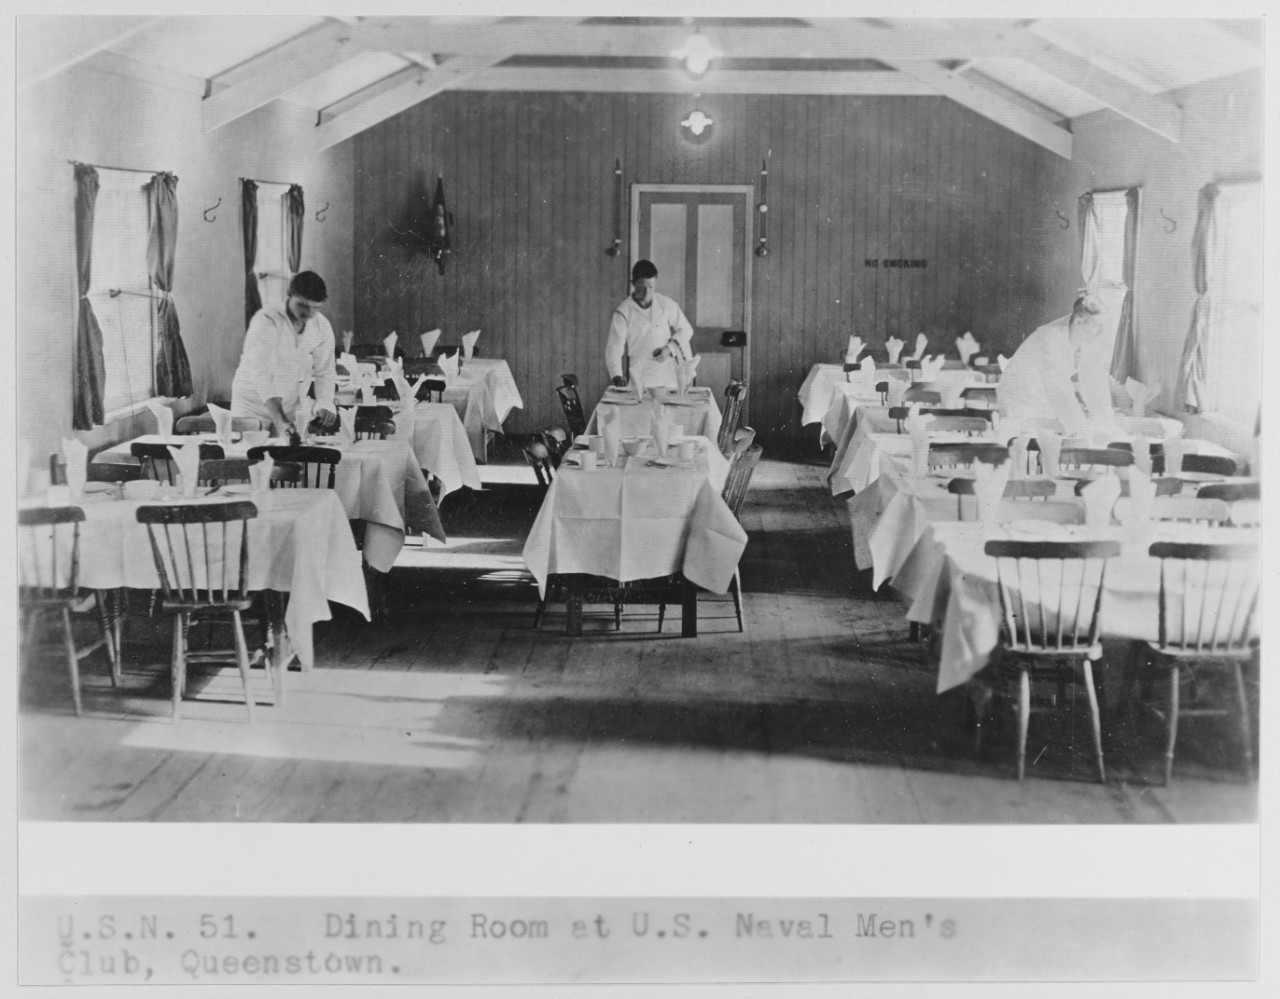 Dining room at U.S. Naval men's Club, Queenstown